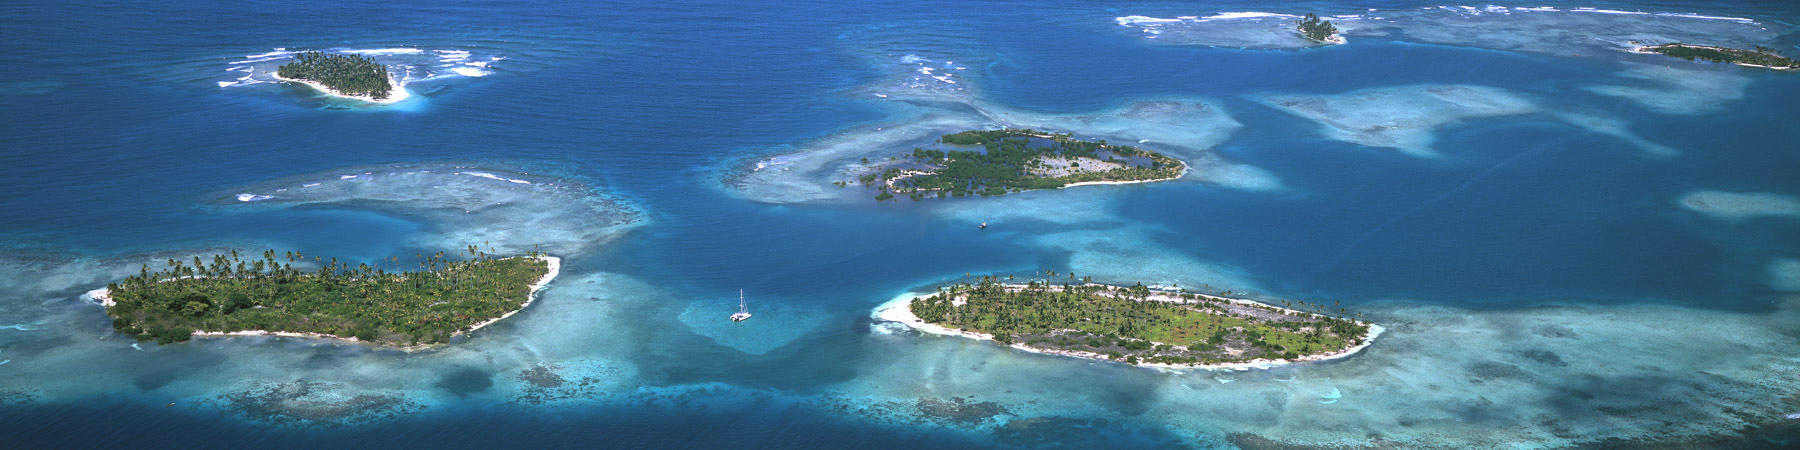 L'archipel des San Blas - Photo Pêcheur d'Images